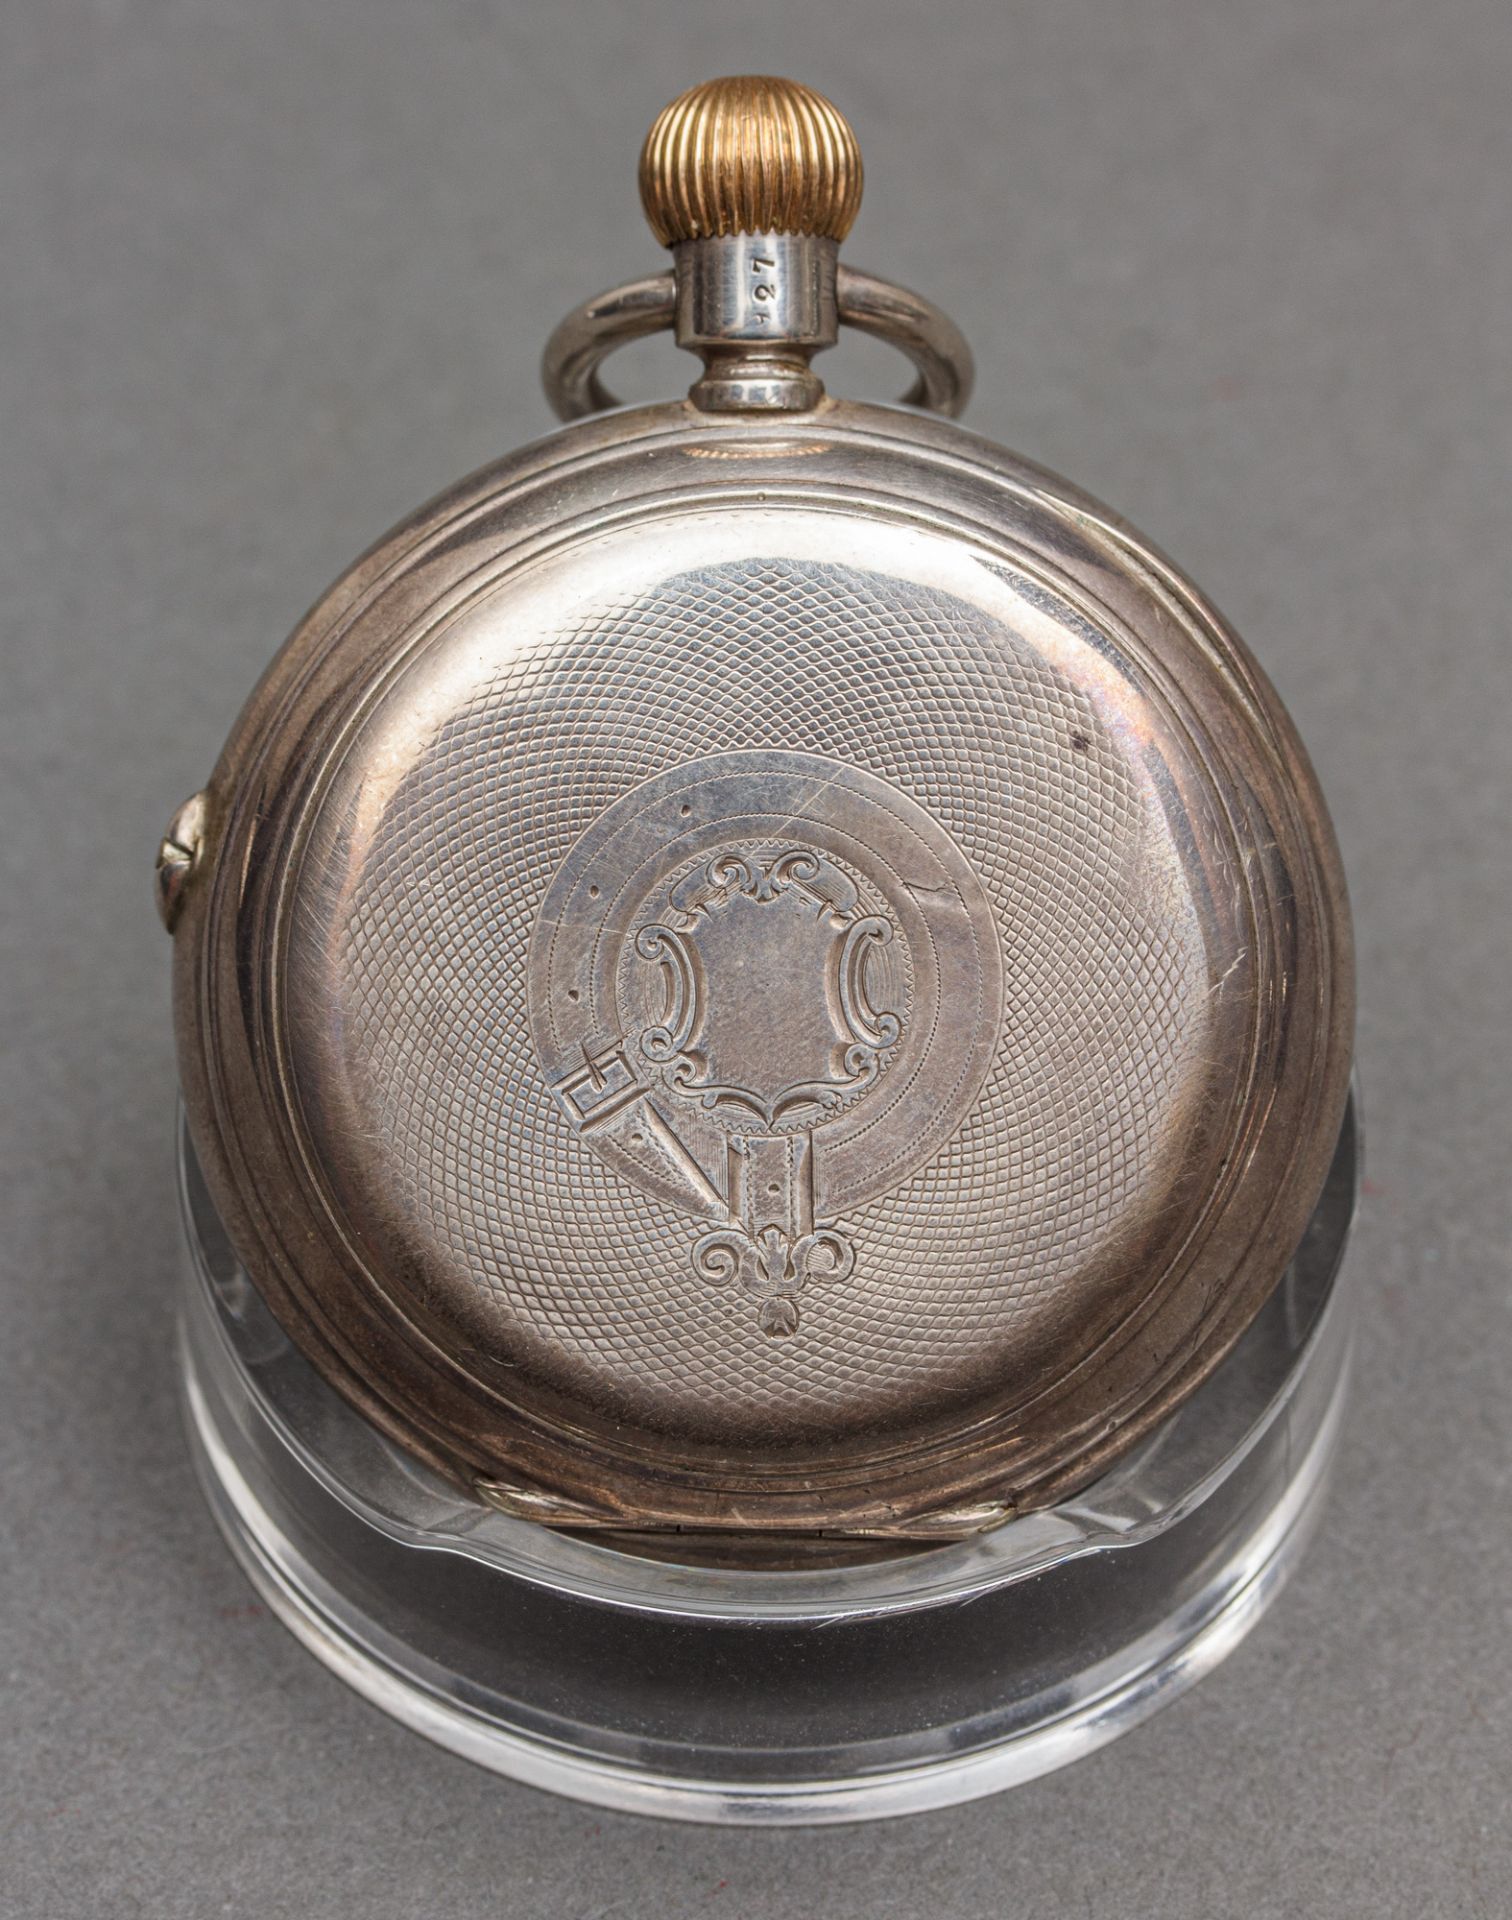 Silbertaschenuhr mit springender Stunde und Minute, Systeme A. Kaiser Brevete, 1897 - Bild 2 aus 5